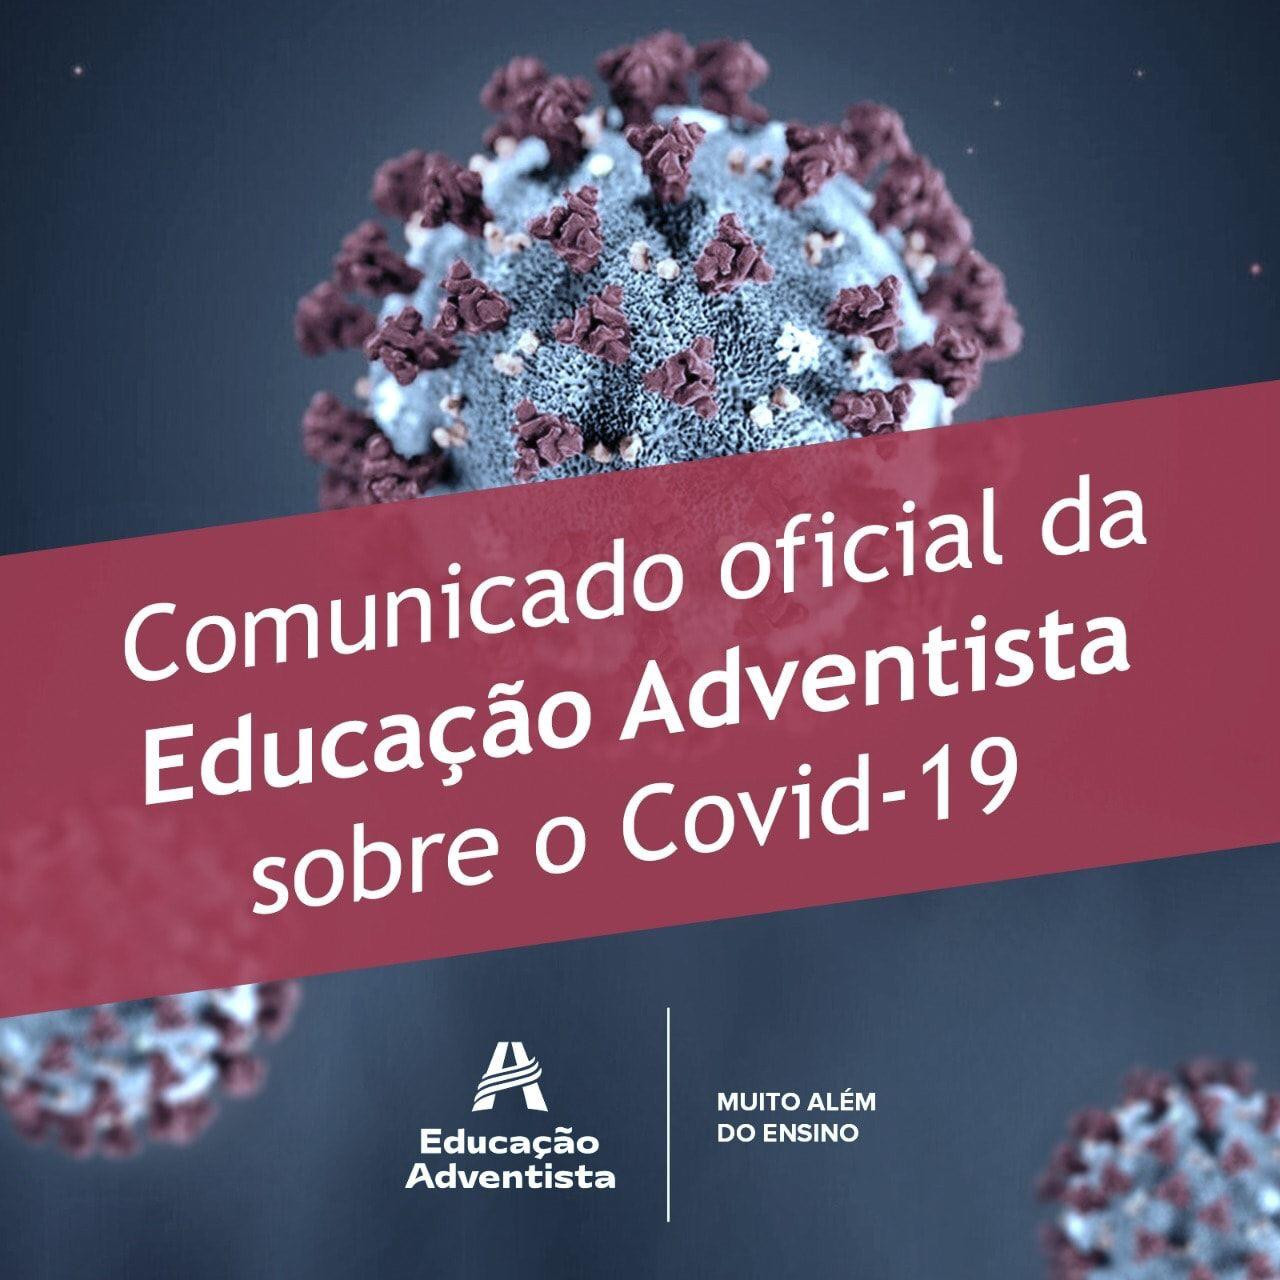 Comunicado oficial da Educação Adventista sobre o Covid-19